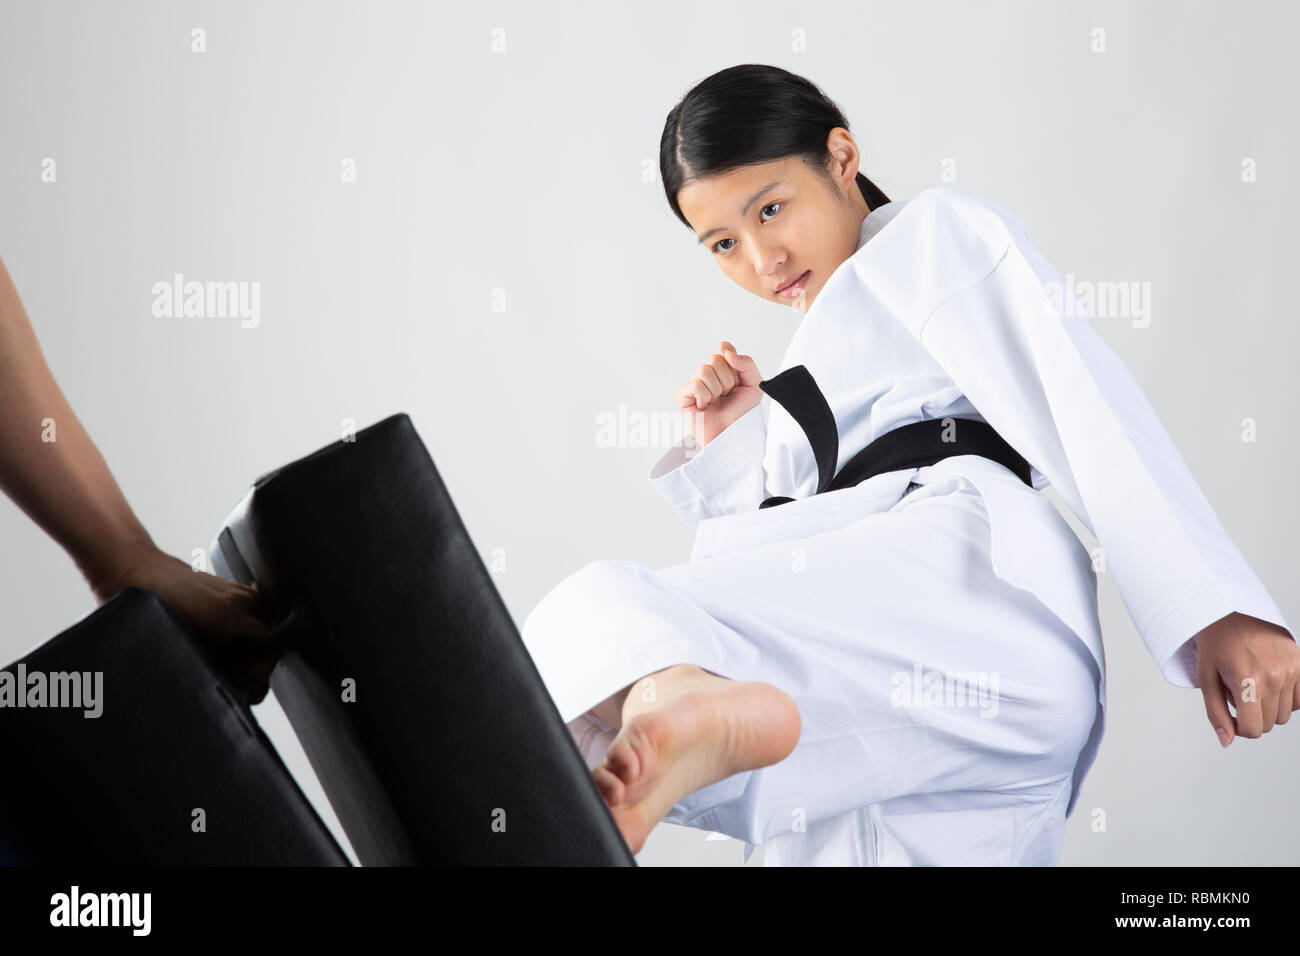 Junge schöne Frau mit Karate Anzug kicking mitt auf weißem Hintergrund Stockfoto